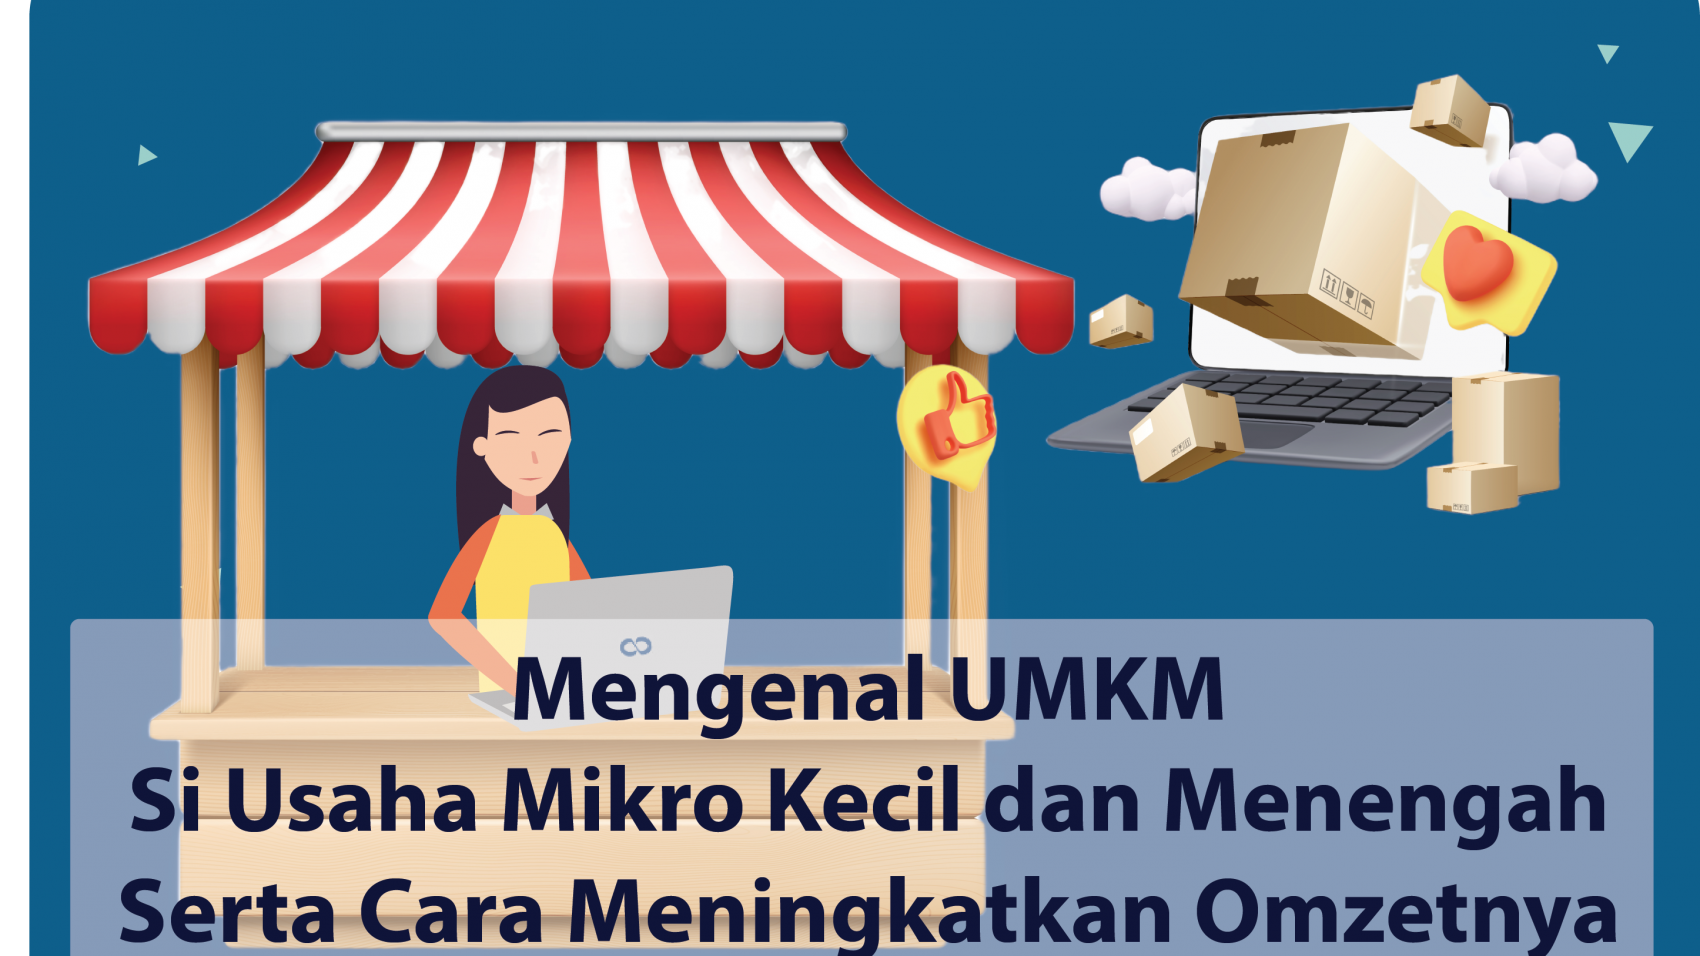 UMKM Digital (1)